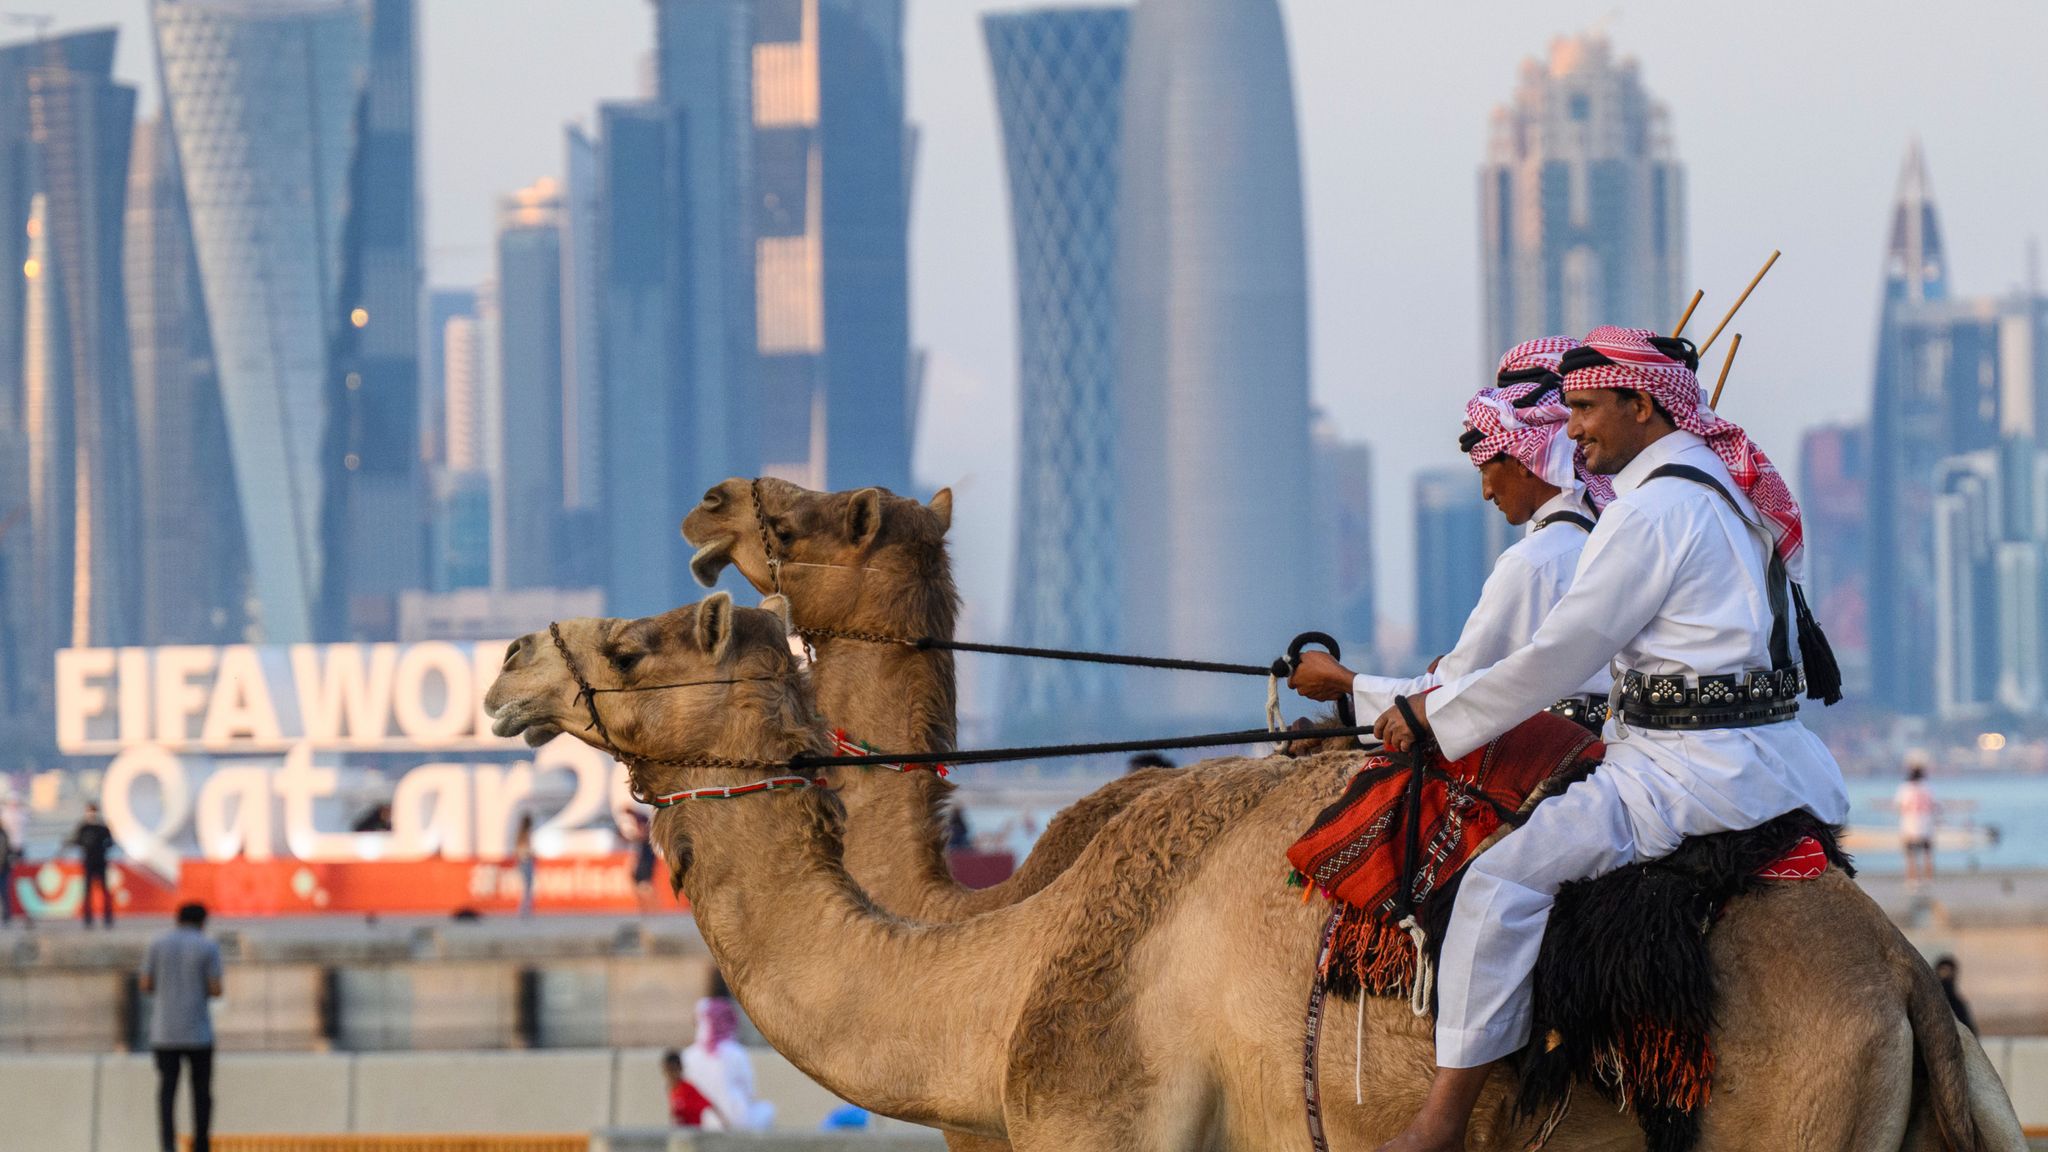 Cuanto cuesta un camello en qatar